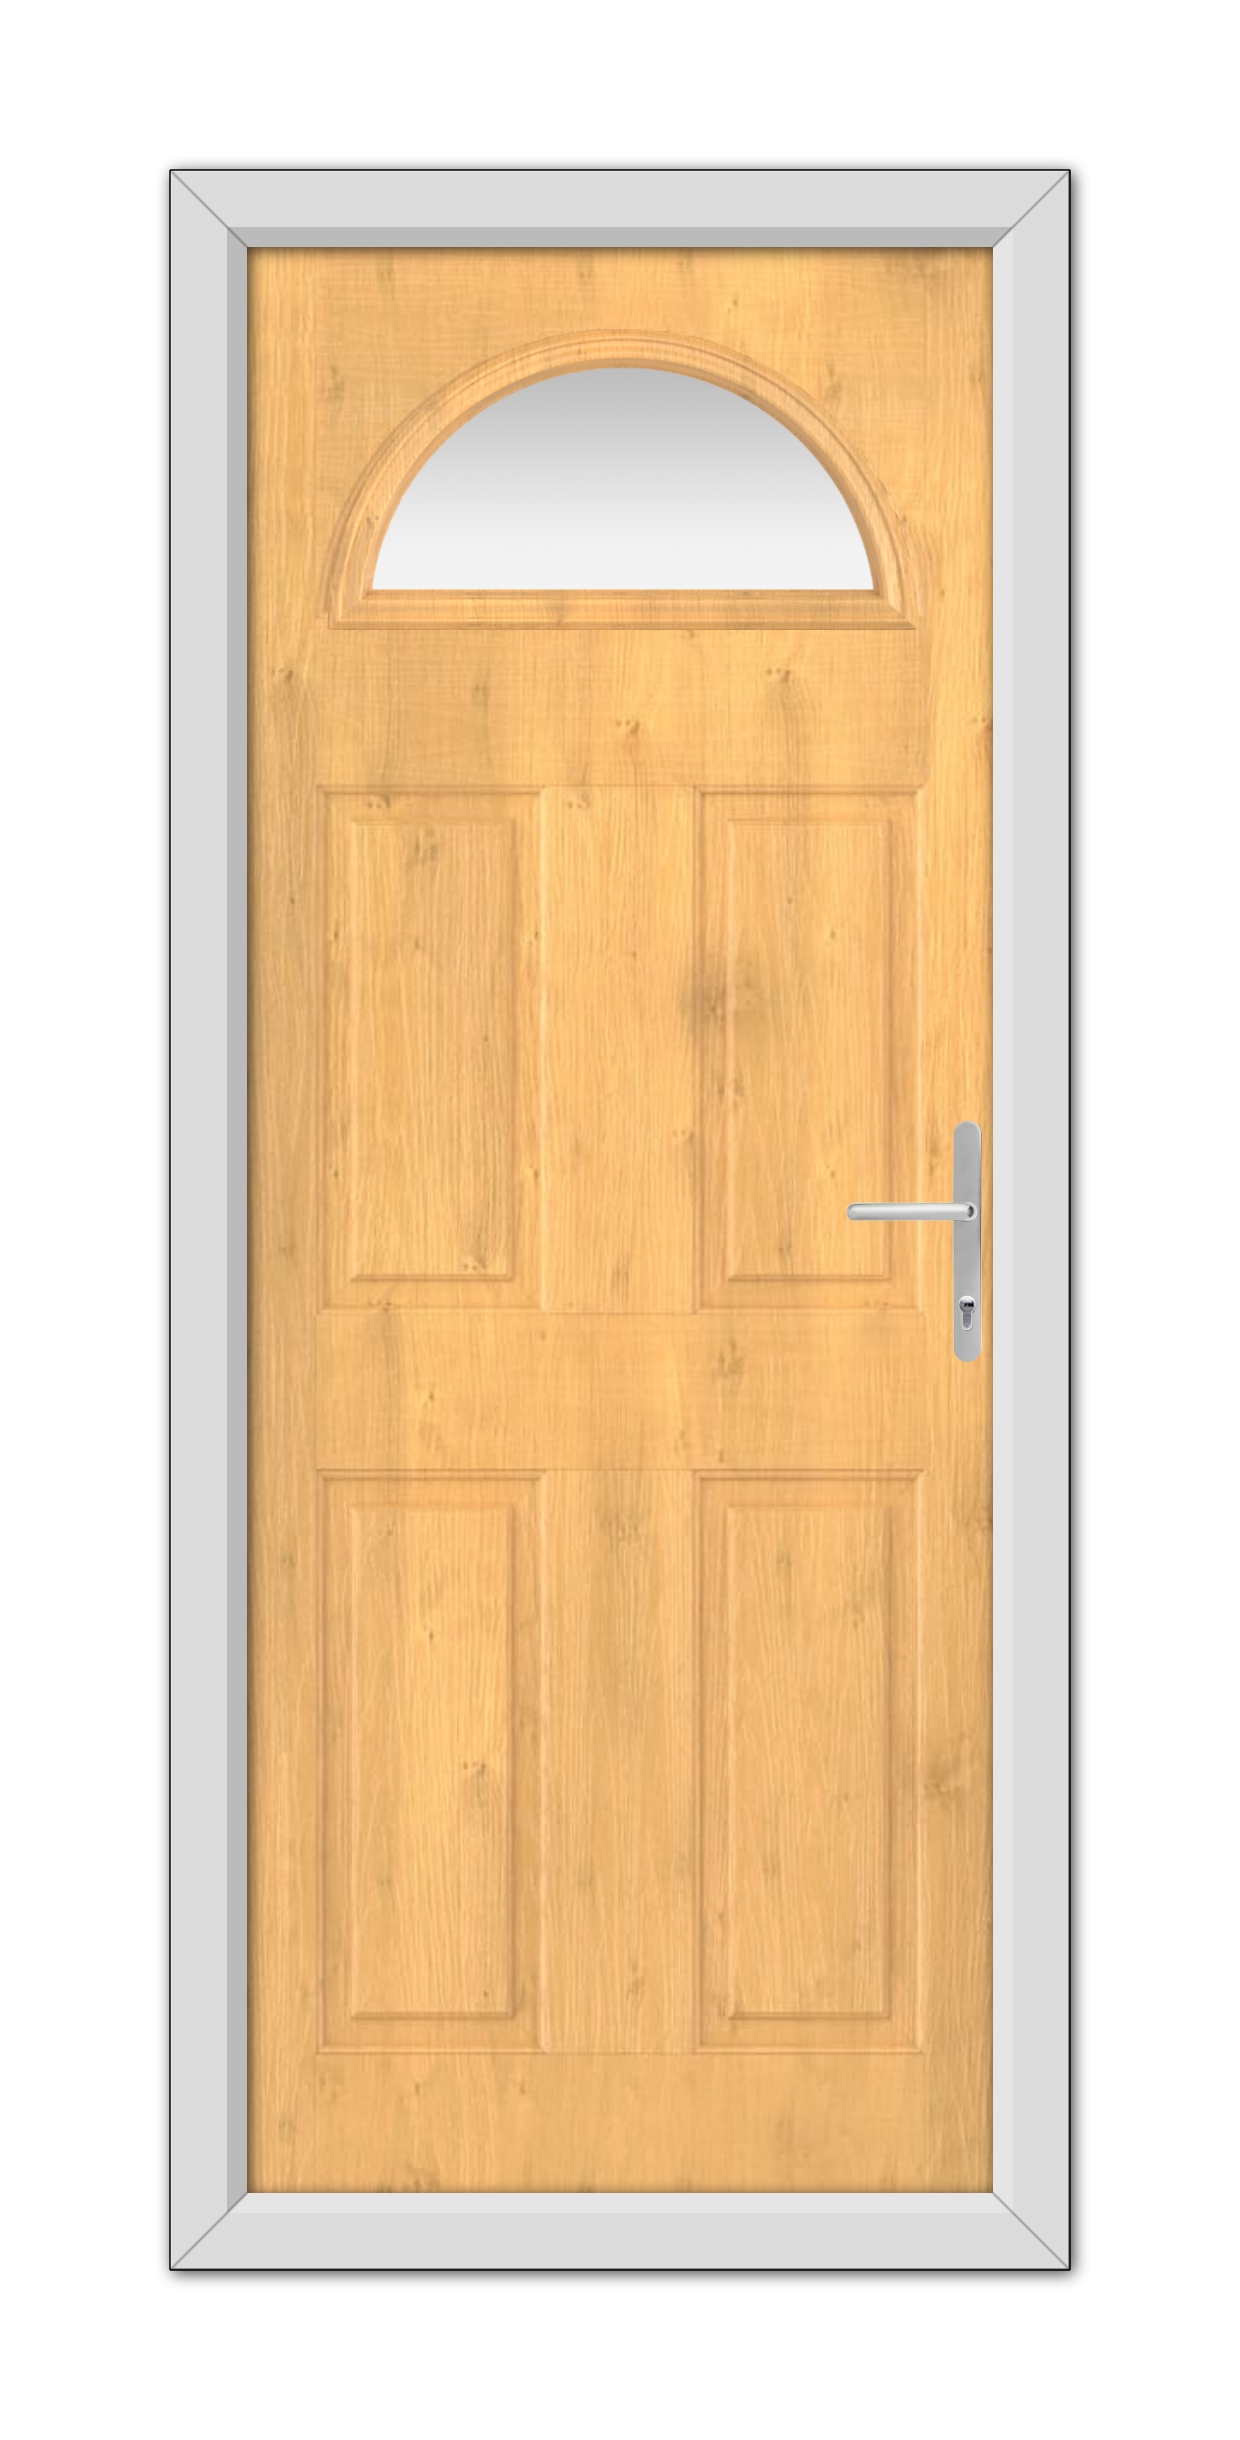 A close-up of an Irish Oak Seville Solid uPVC Door.